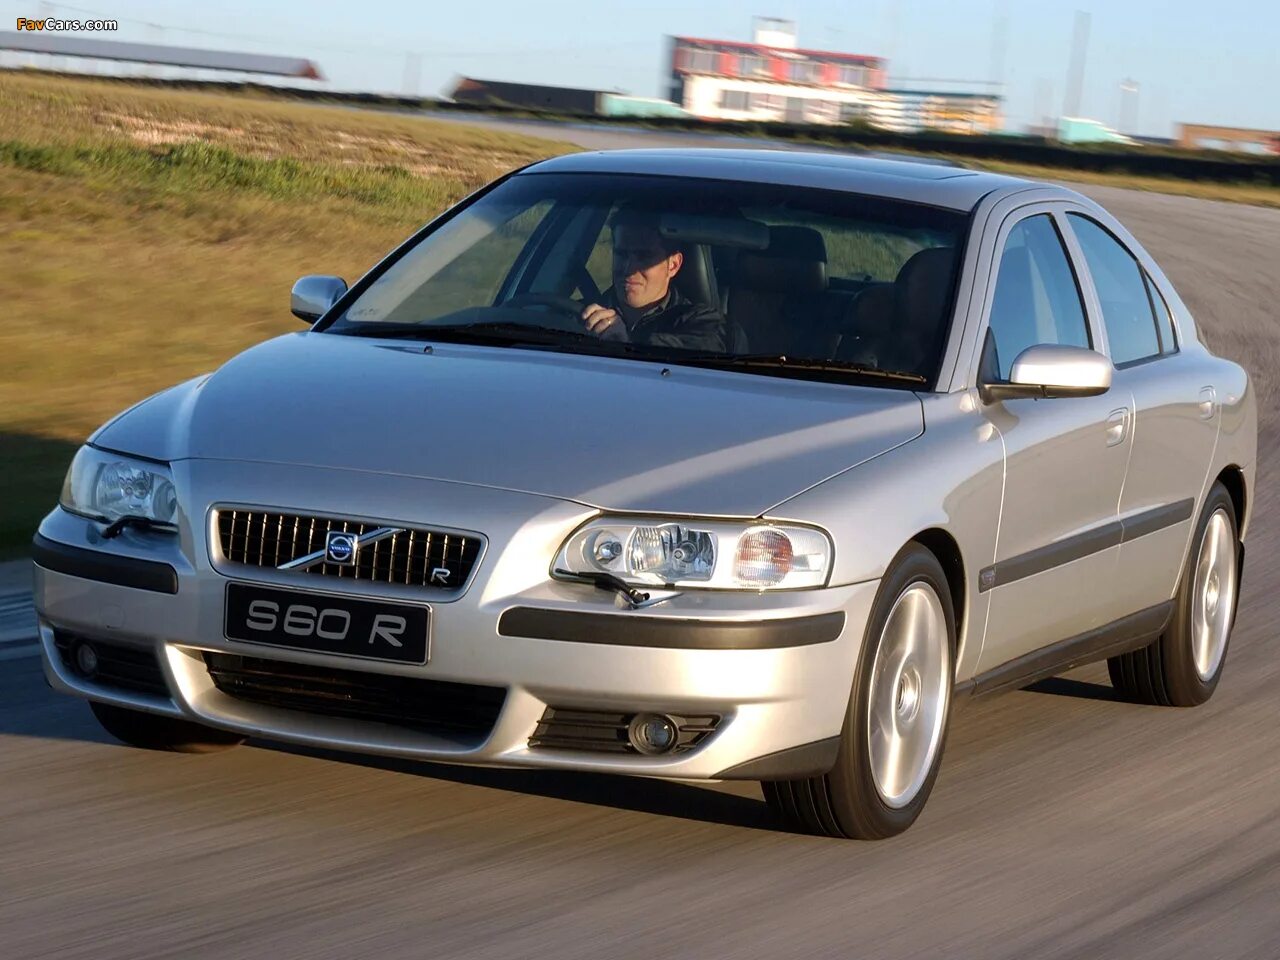 Volvo s60 r 2004. Вольво s60 2004. Вольво с60 2004.